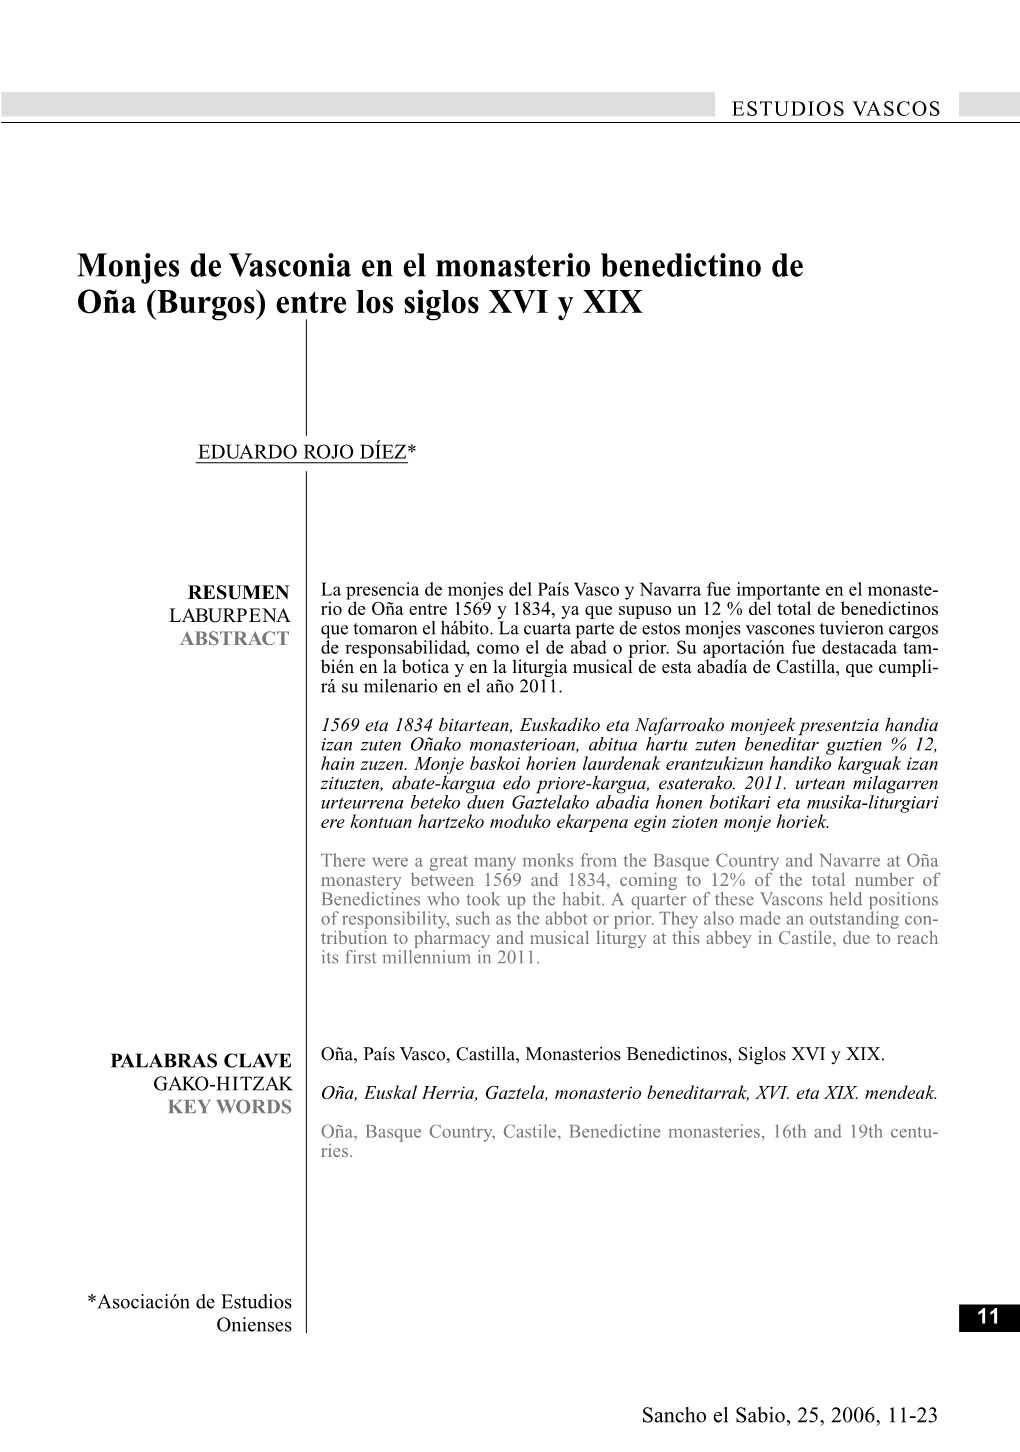 Monjes De Vasconia En El Monasterio Benedictino De Oña (Burgos) Entre Los Siglos XVI Y XIX